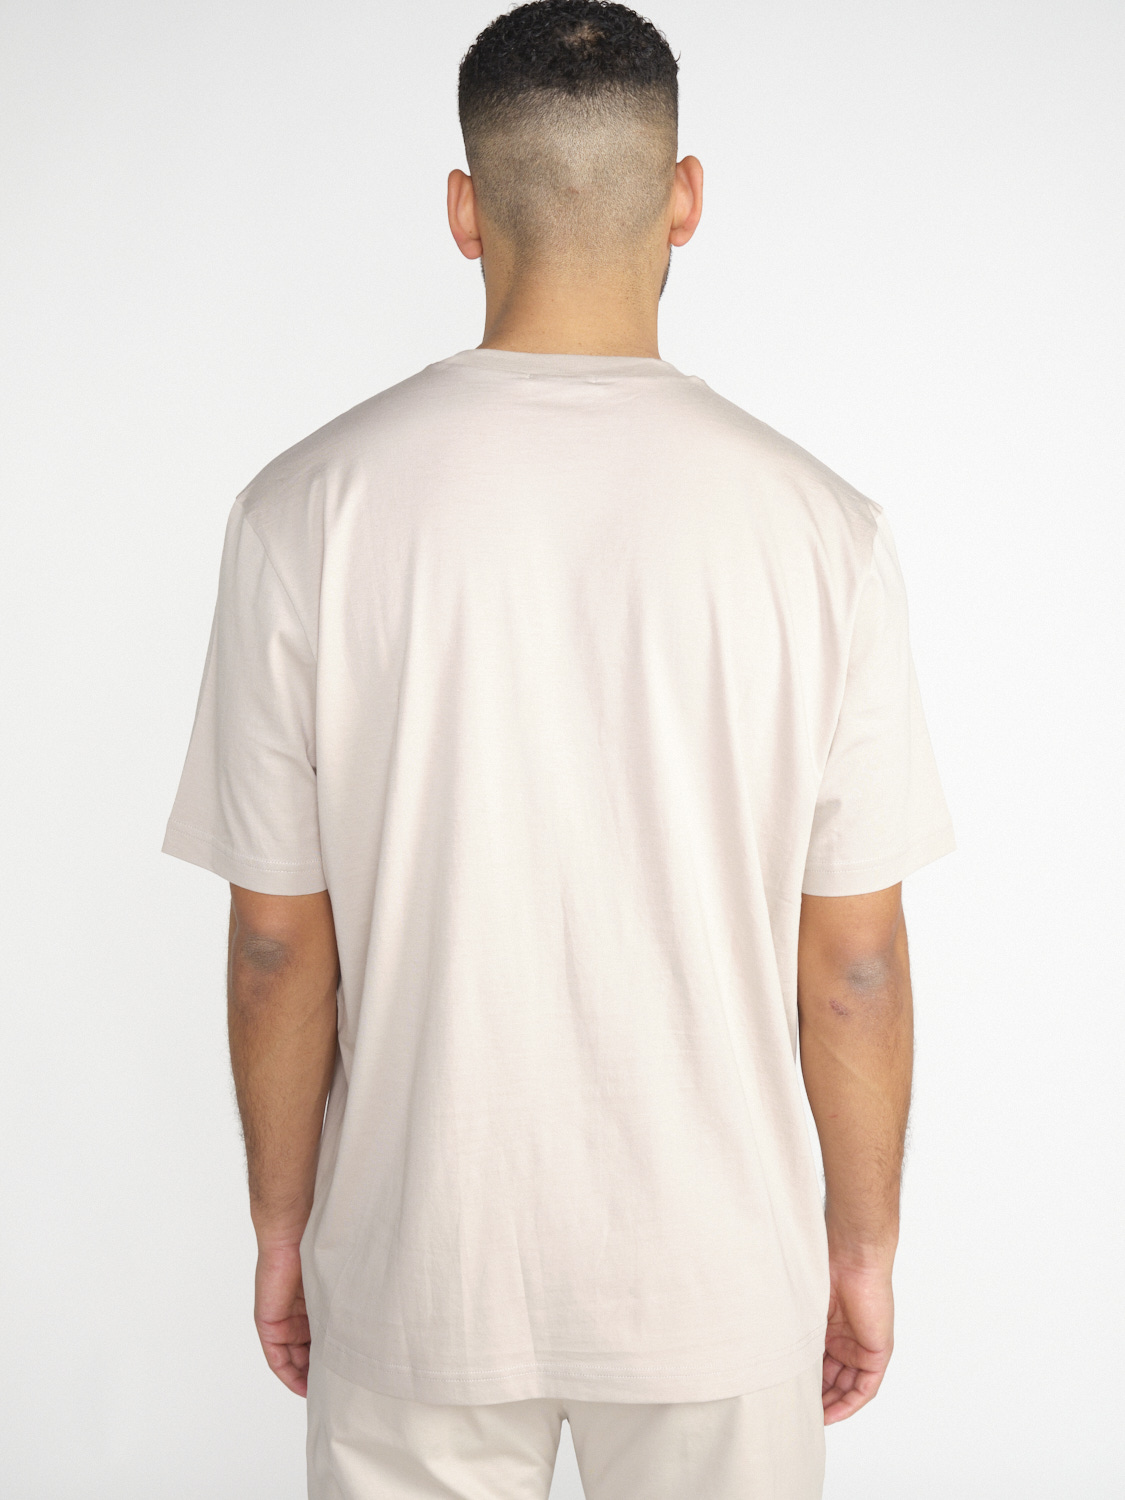 Stefan Brandt Eli 30 – cotton shirt  beige M